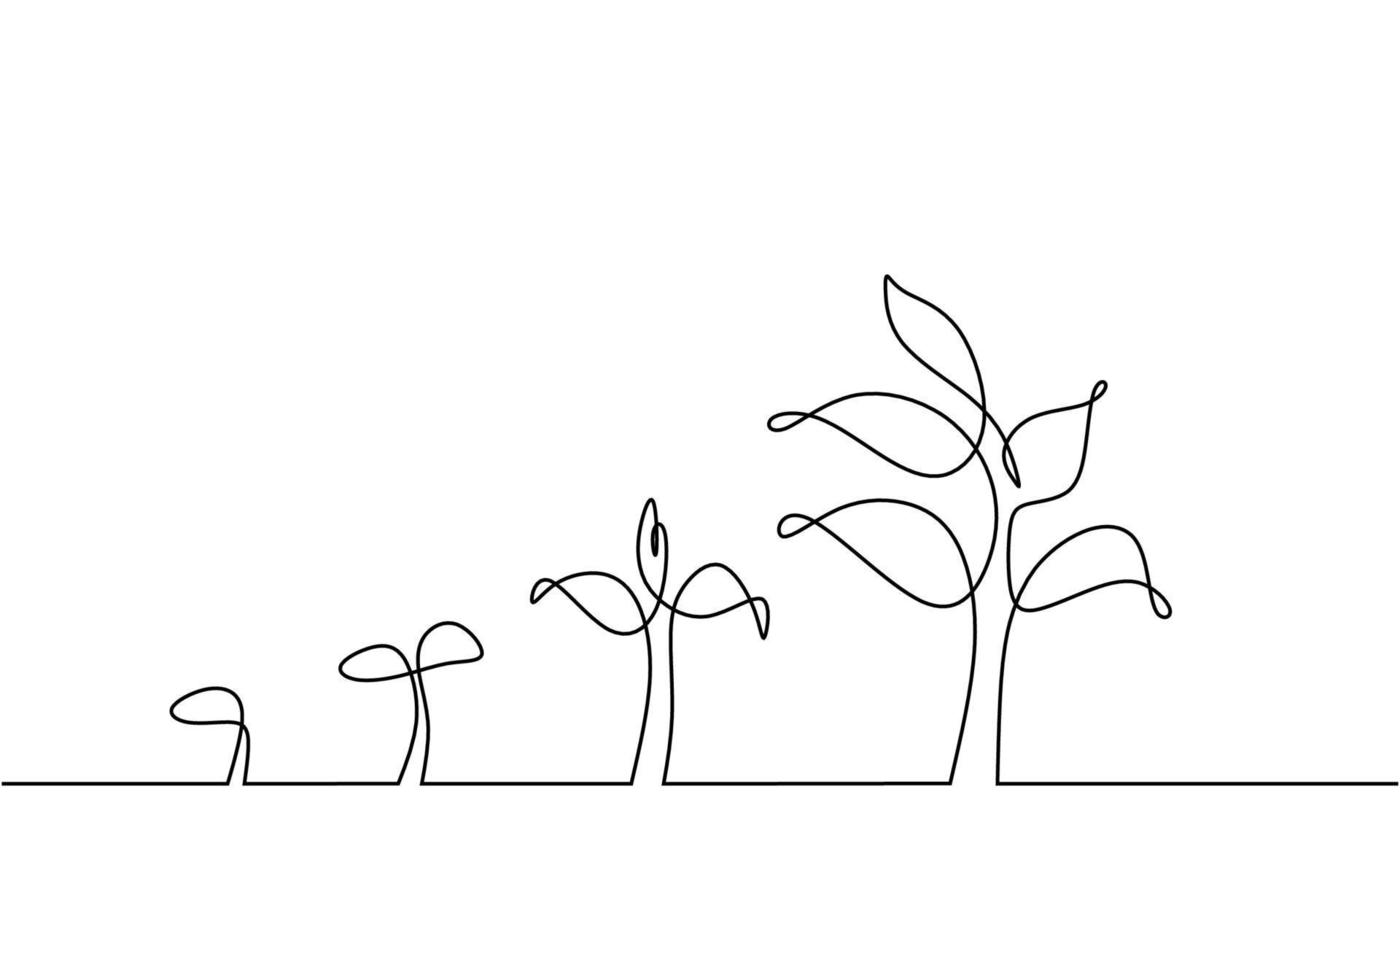 proceso continuo de crecimiento de plantas de dibujo de una línea vector